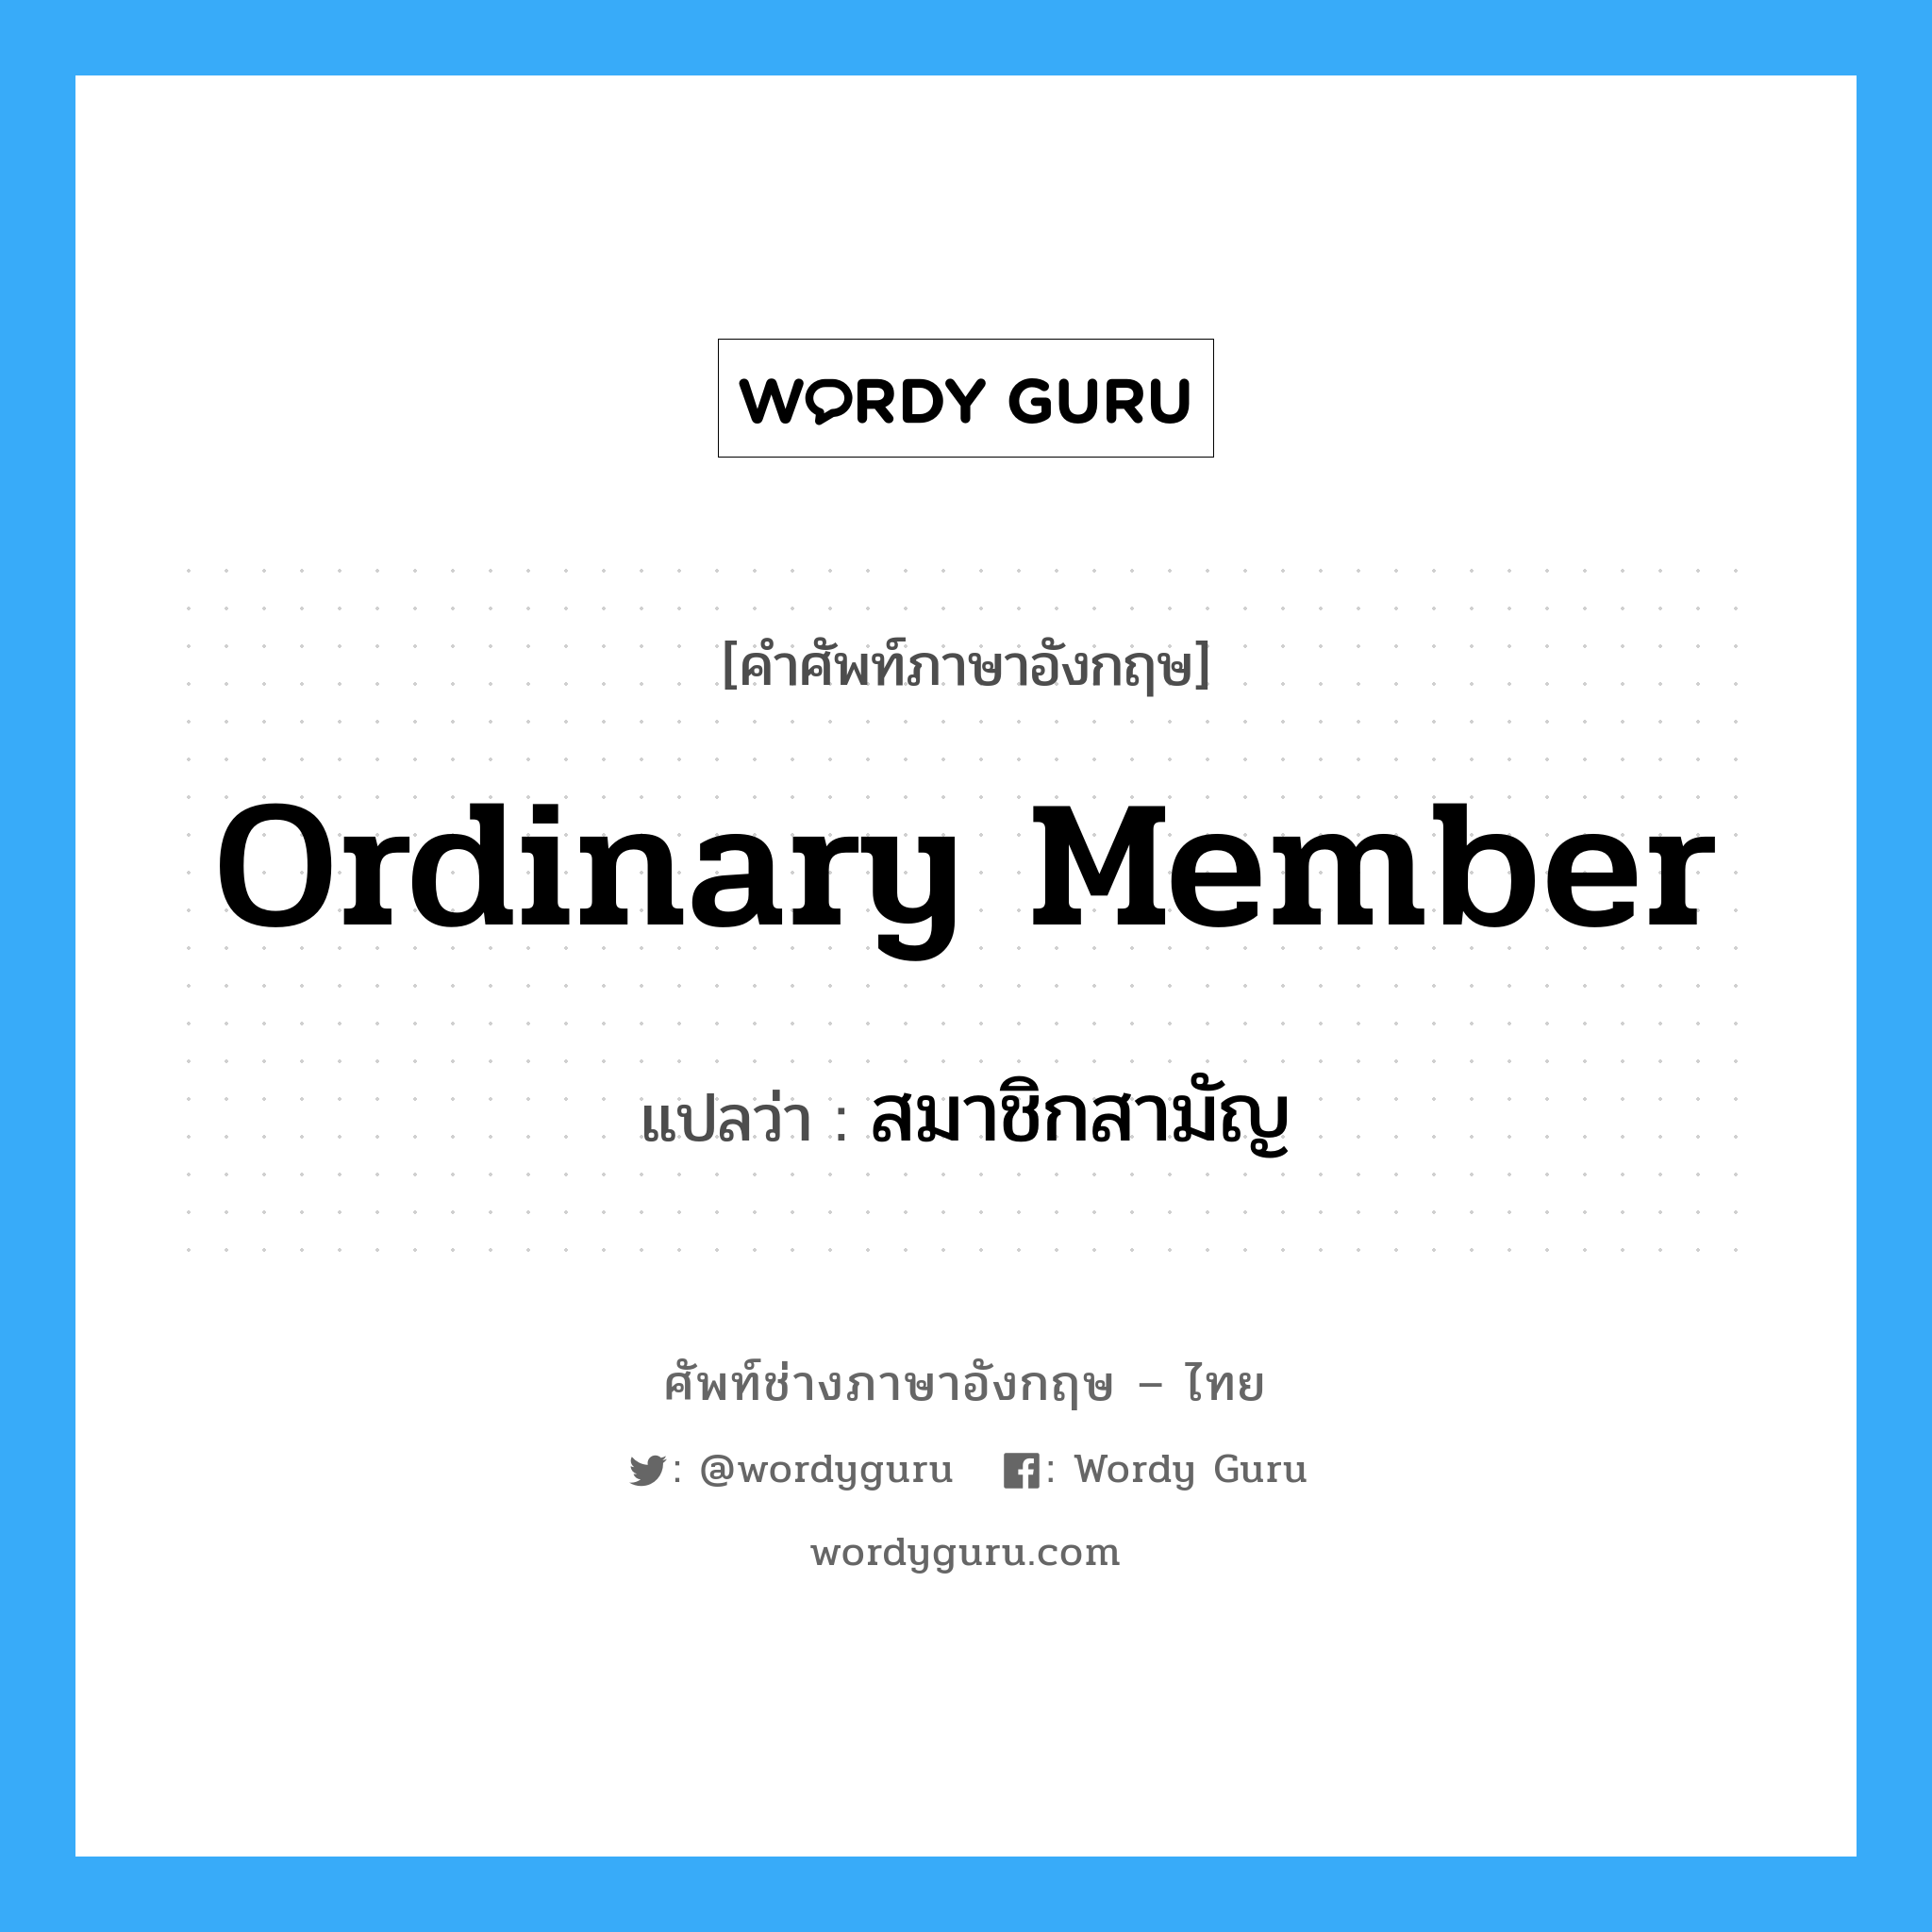 สมาชิกสามัญ ภาษาอังกฤษ?, คำศัพท์ช่างภาษาอังกฤษ - ไทย สมาชิกสามัญ คำศัพท์ภาษาอังกฤษ สมาชิกสามัญ แปลว่า Ordinary Member